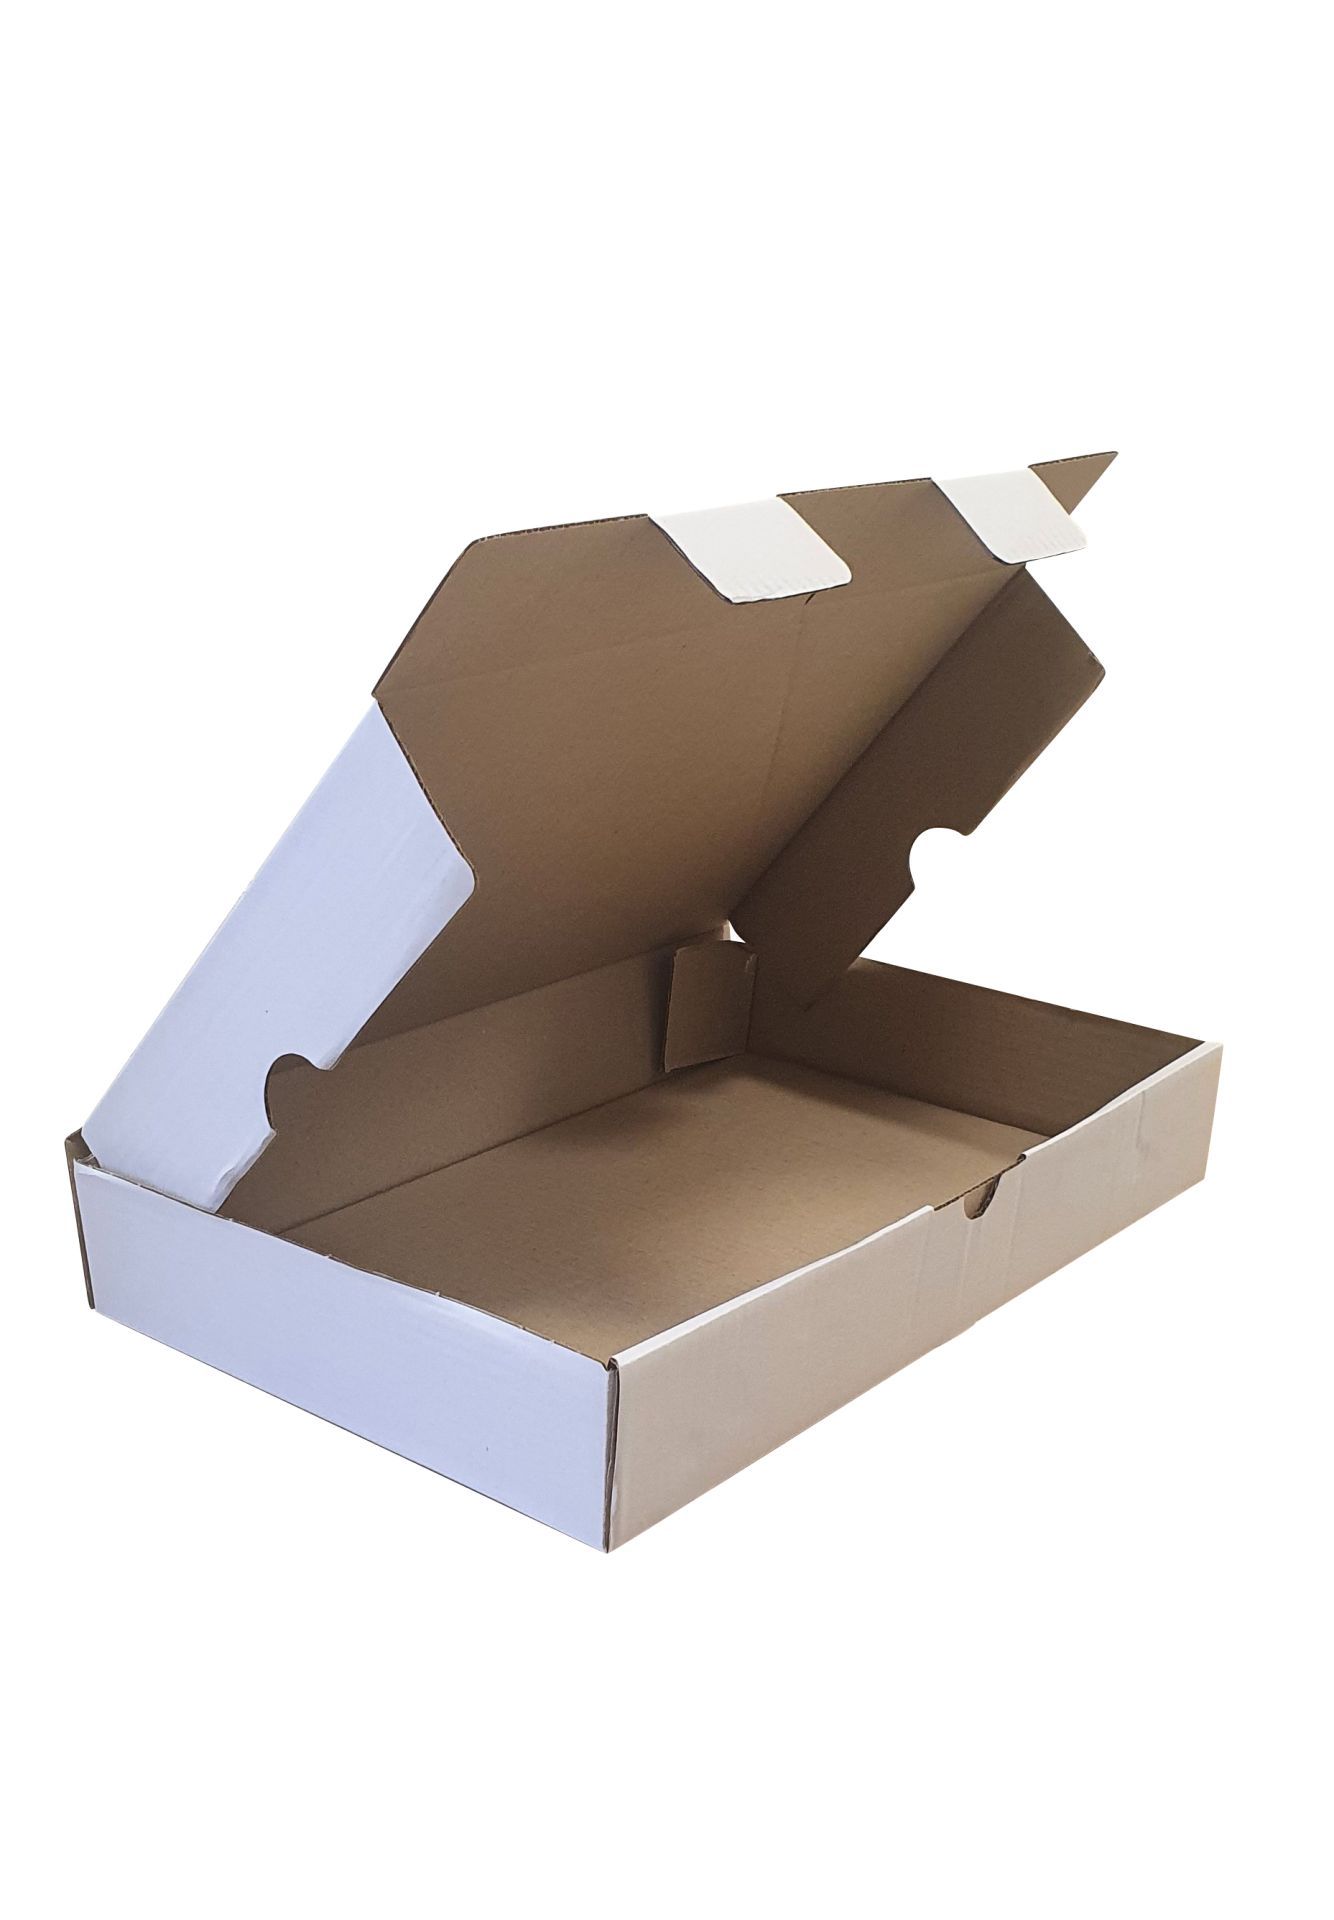 Boîte carton d'expédition blanche 46,5 x 28,5 x 7,5 (cm)._0